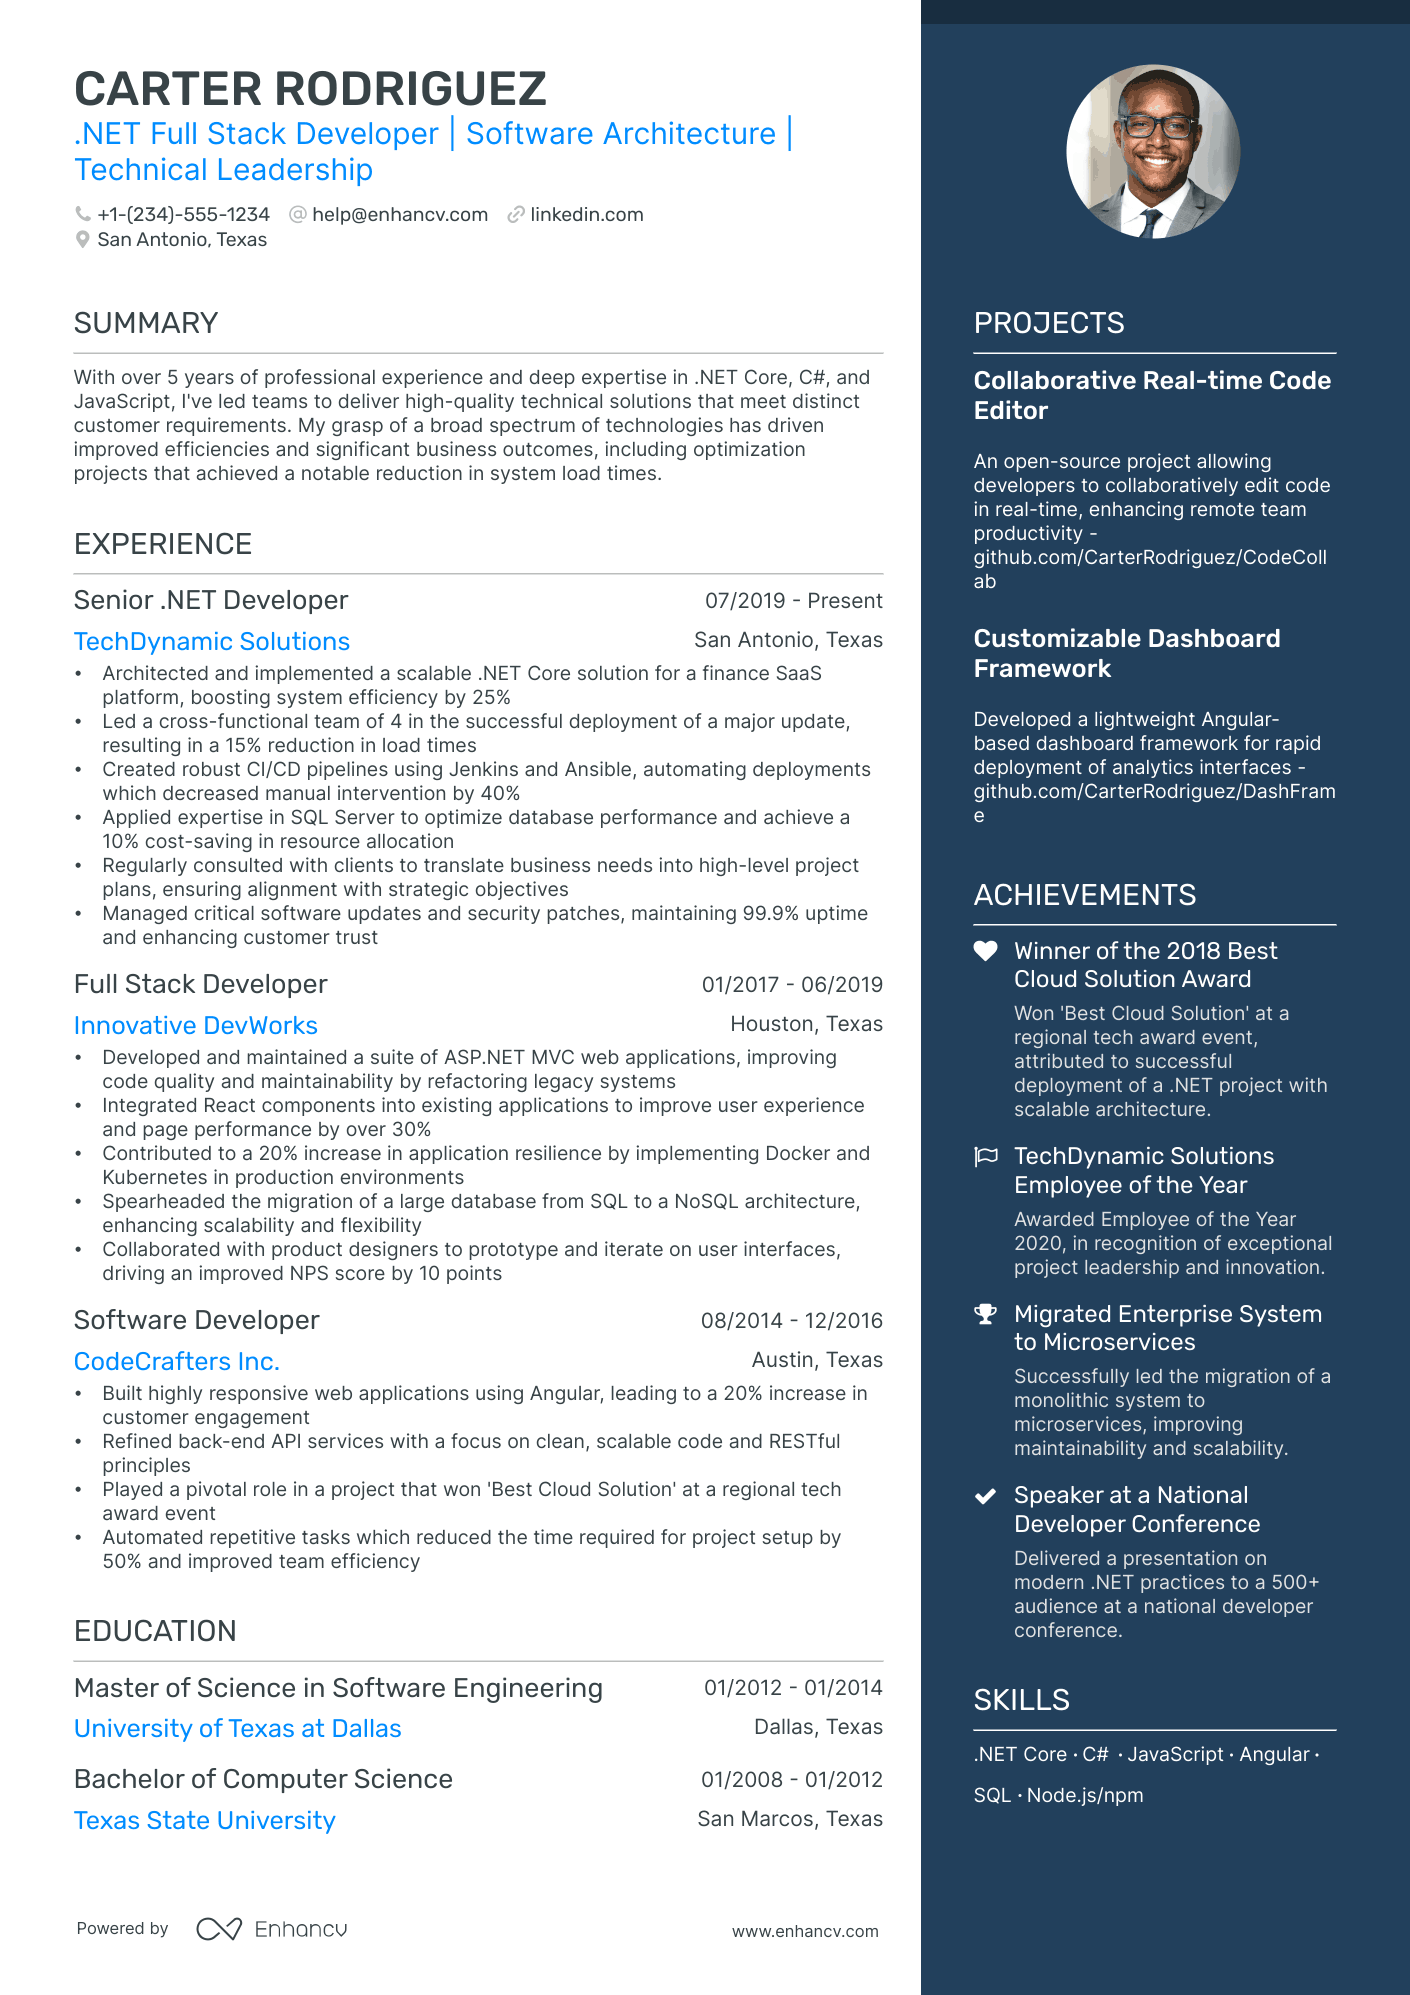 resume format for 2 year experience dotnet developer